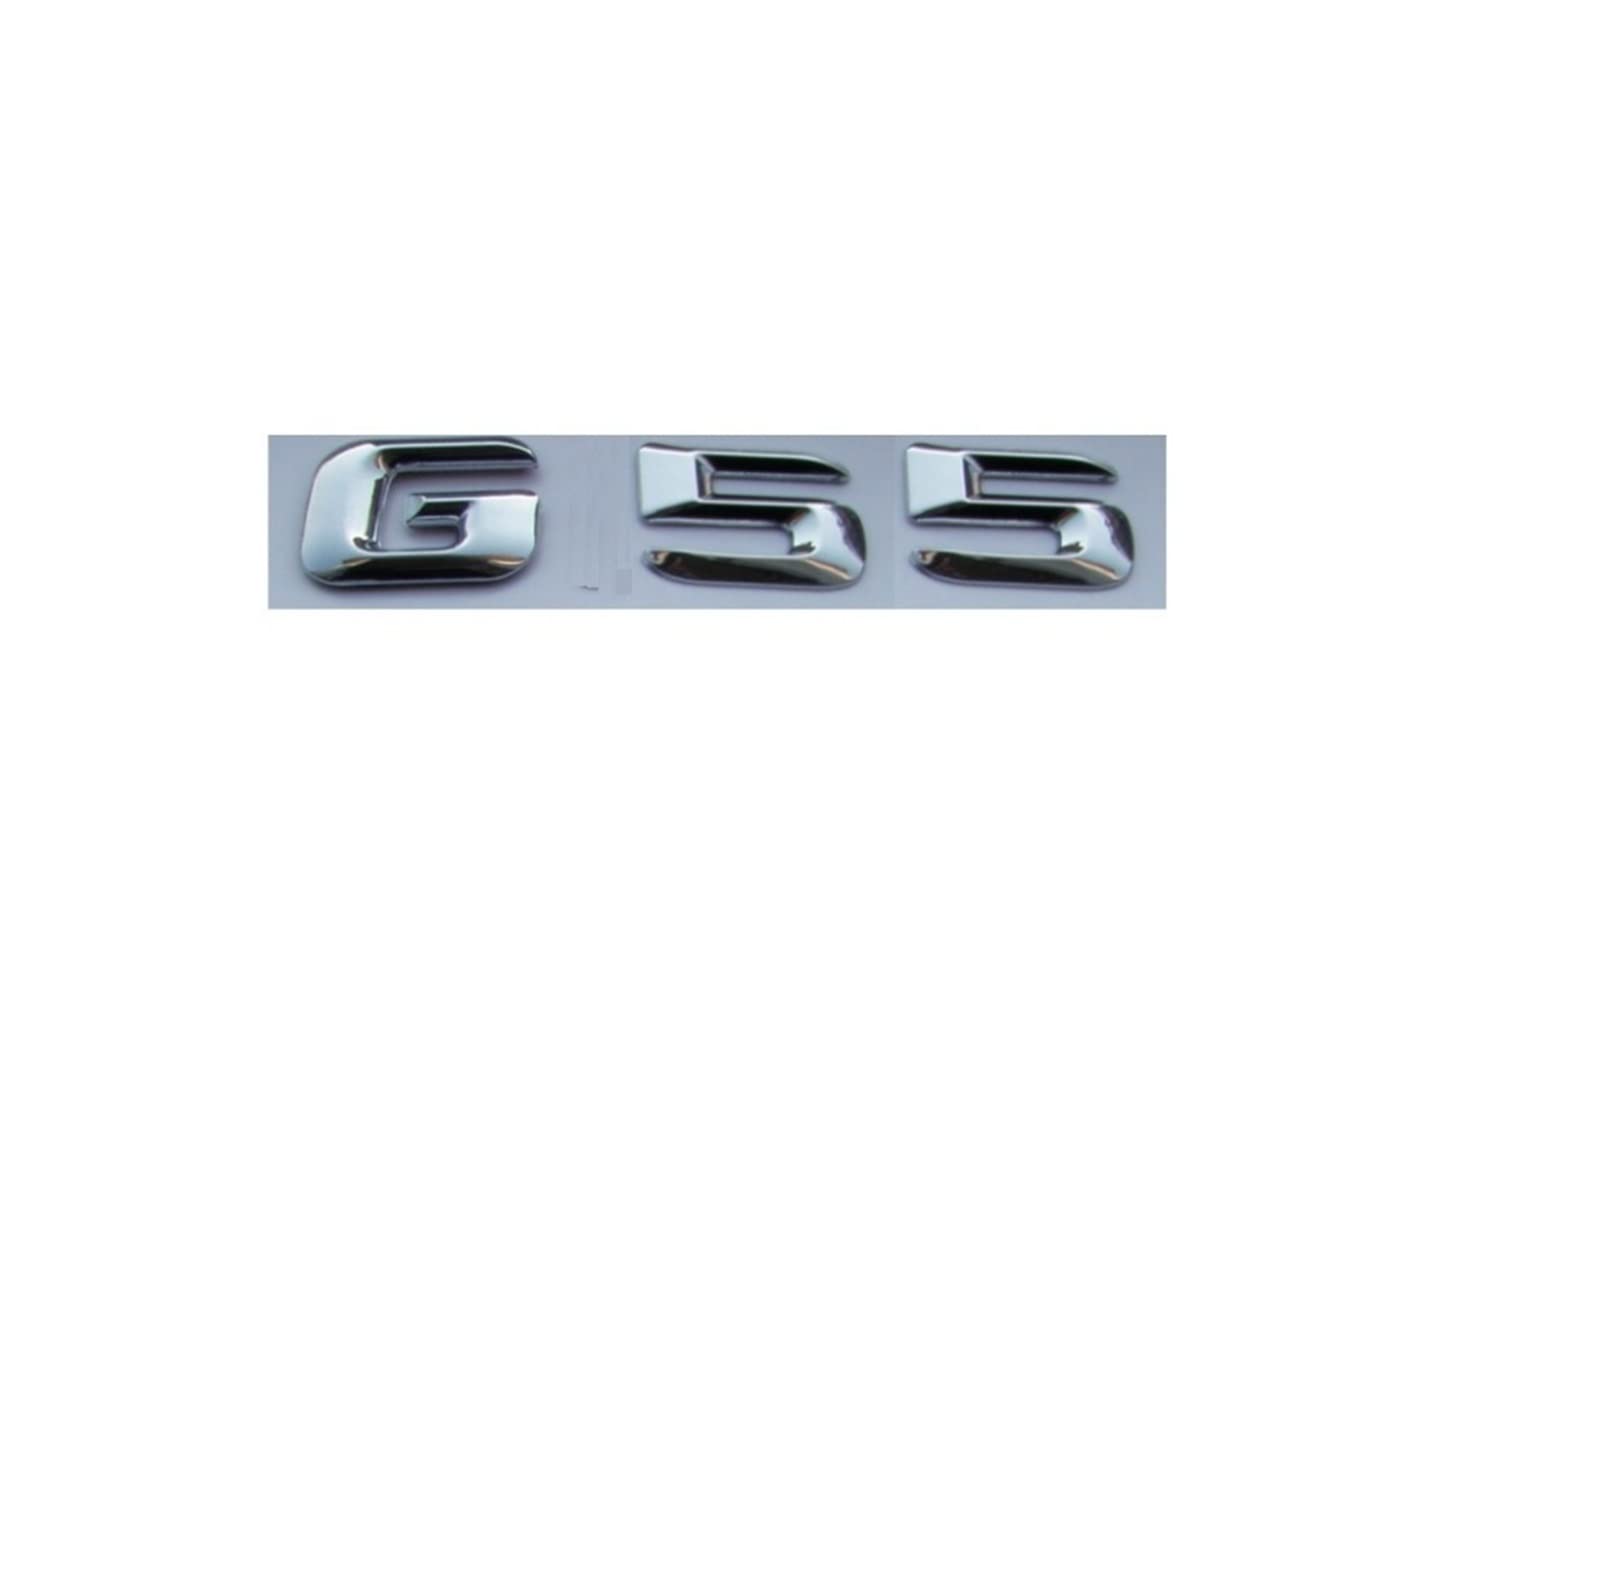 LHYFAGQK Chrom-glänzendes silbernes ABS-Autokofferraum-hintere Zahl-Buchstaben-Wörter-Abzeichen-Emblem-Aufkleber-Aufkleber, kompatibel mit Mercedes Benz G55 AMG Abzeichen Autoaufkleber von LHYFAGQK